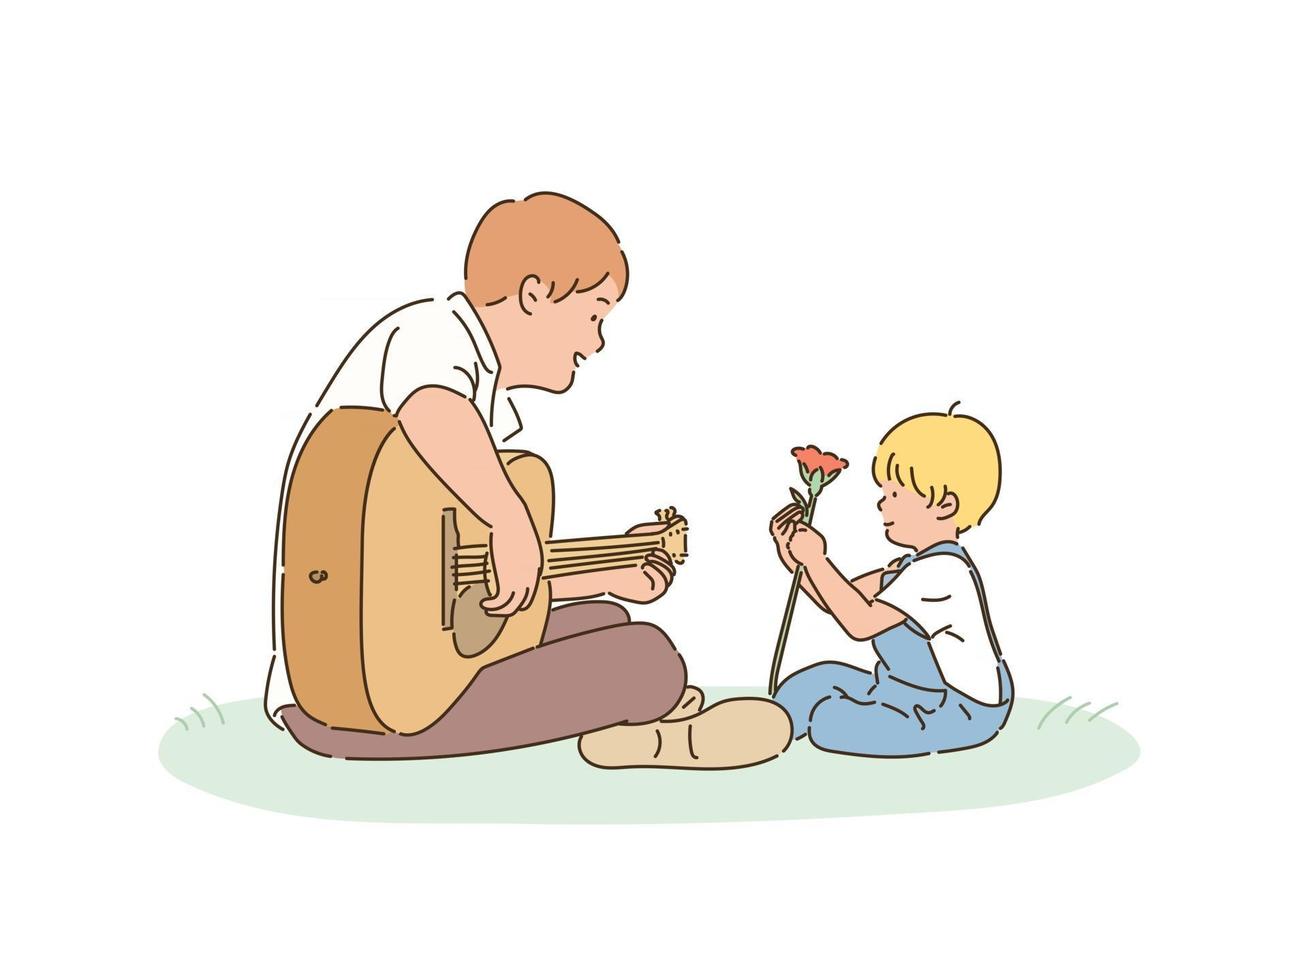 papà e figlio sono seduti nel parco. il padre suona la chitarra e il figlio tiene in mano dei fiori. illustrazioni di disegno vettoriale stile disegnato a mano.